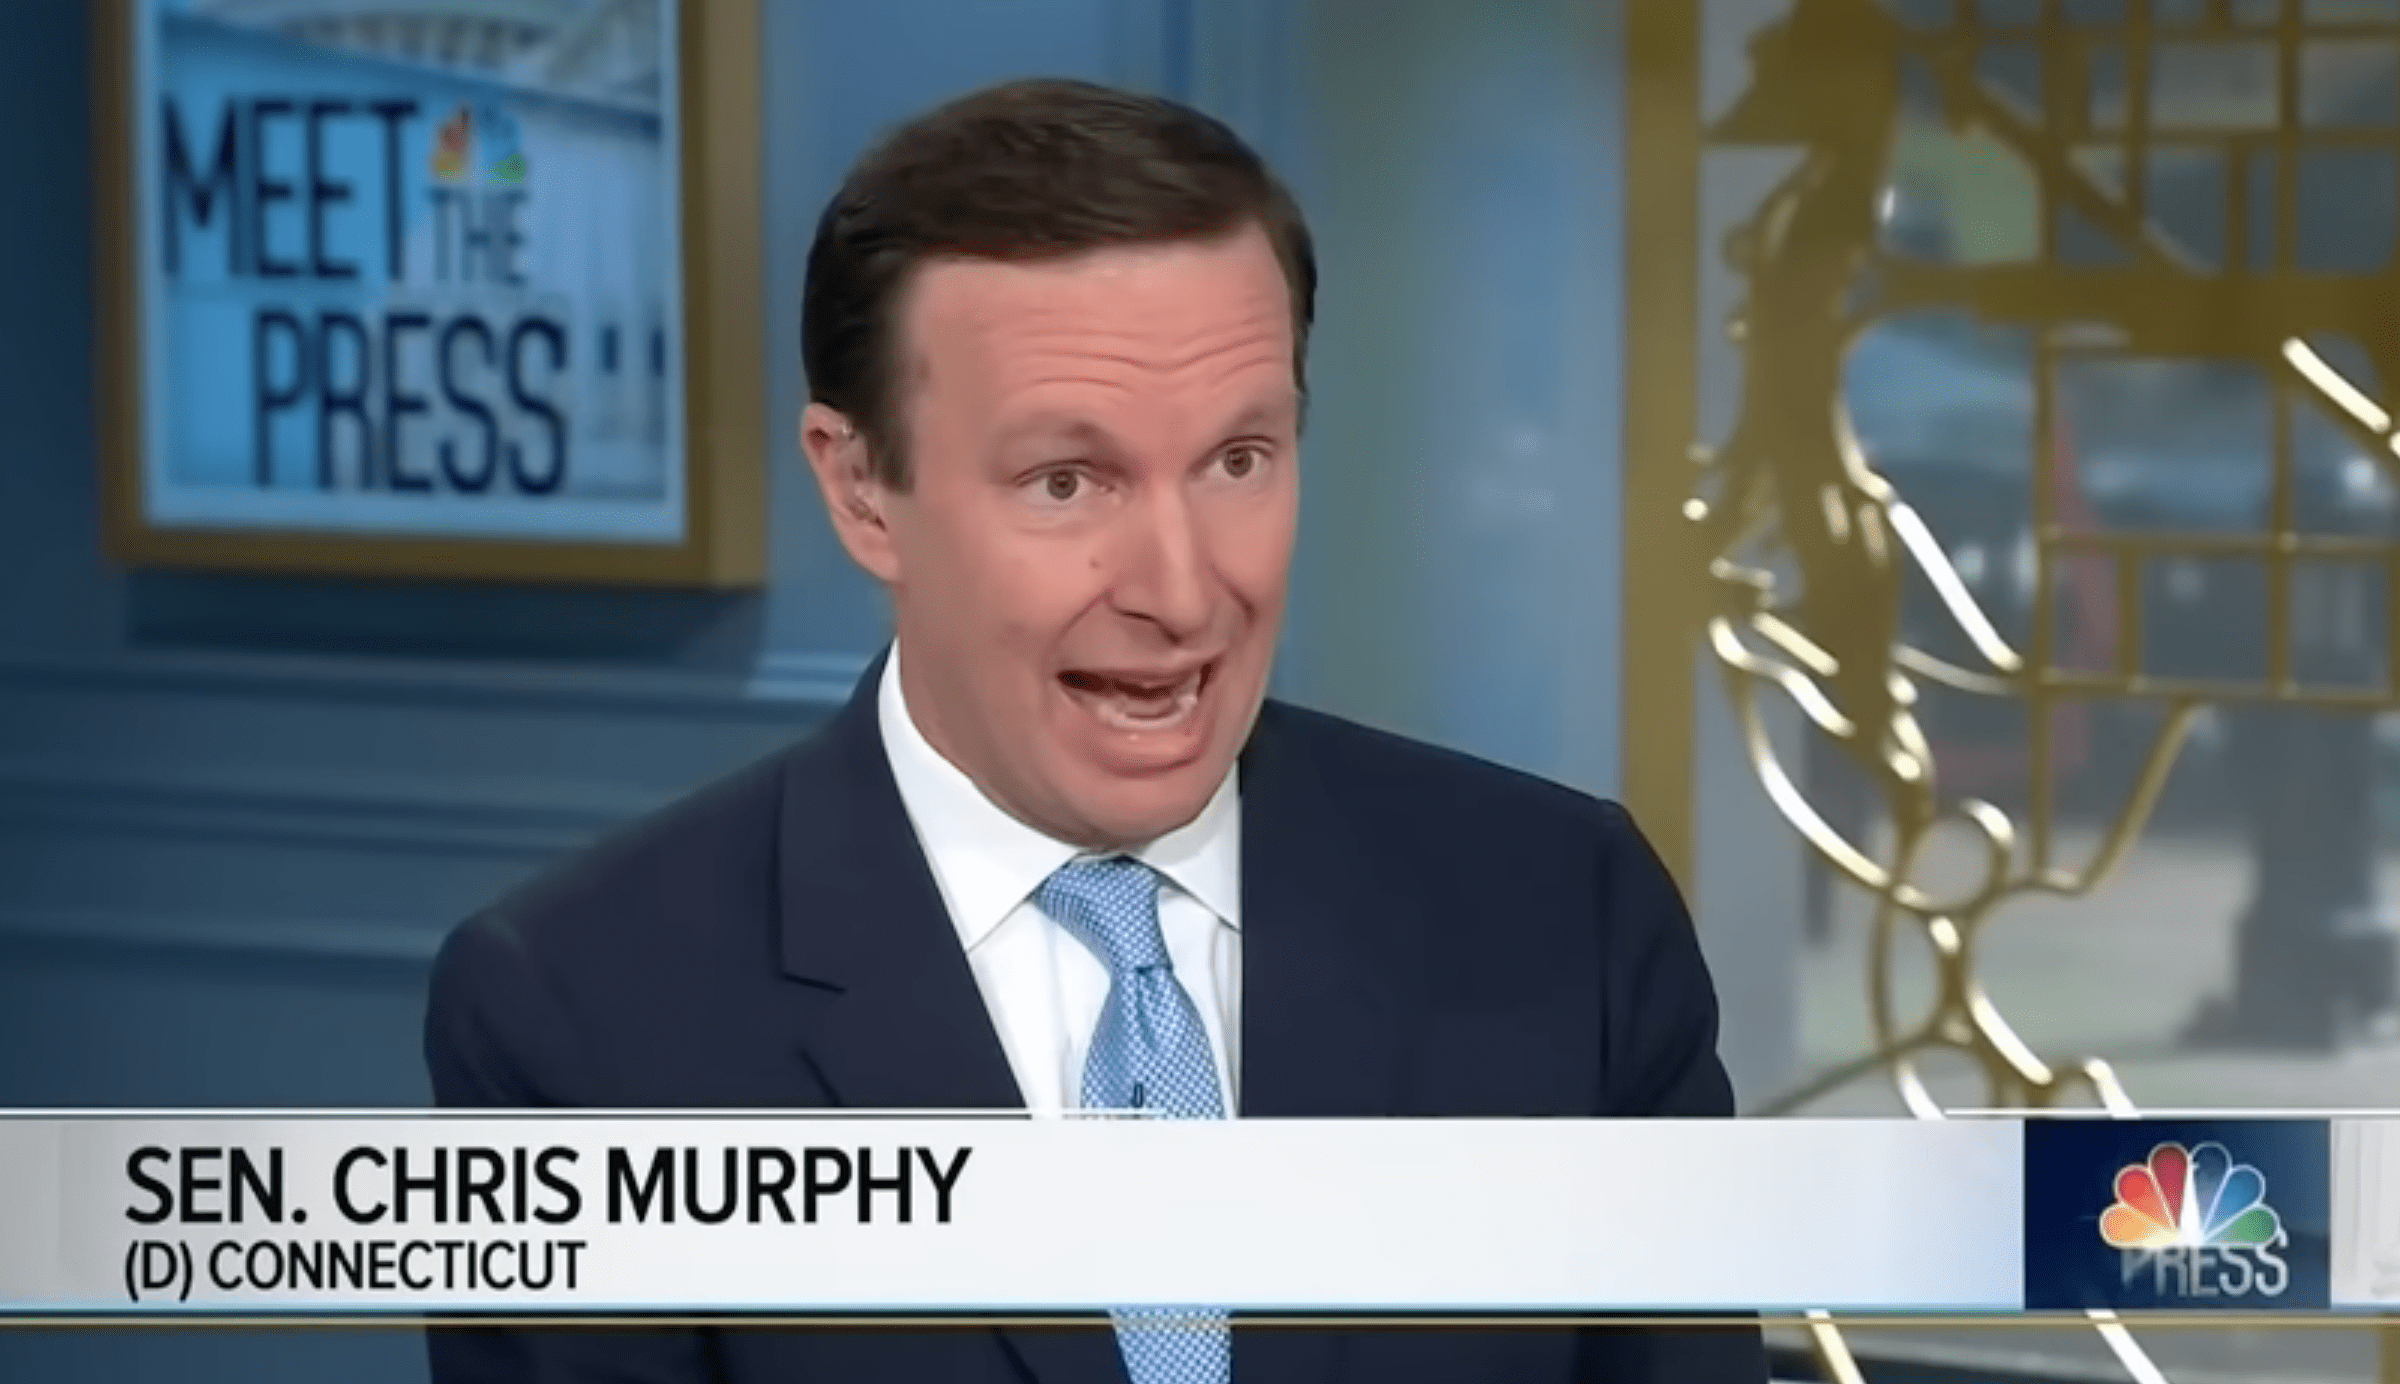 Chris Murphy’s threat of a “popular revolt” endangers Americans.